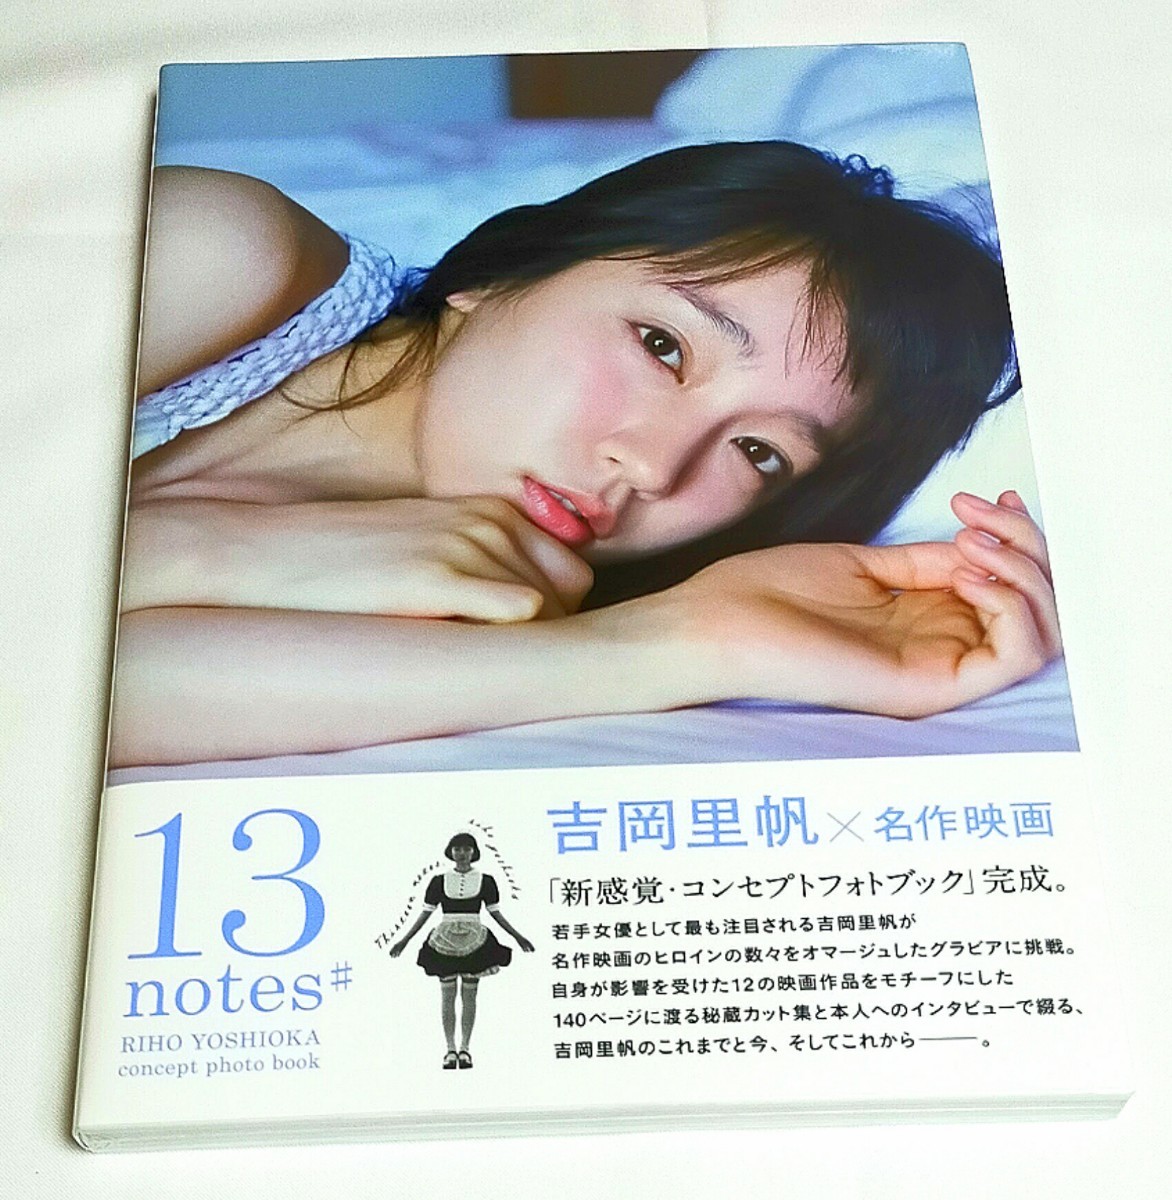 新品。『13 notes# 吉岡里帆コンセプトフォトブック』 シュリンク包装